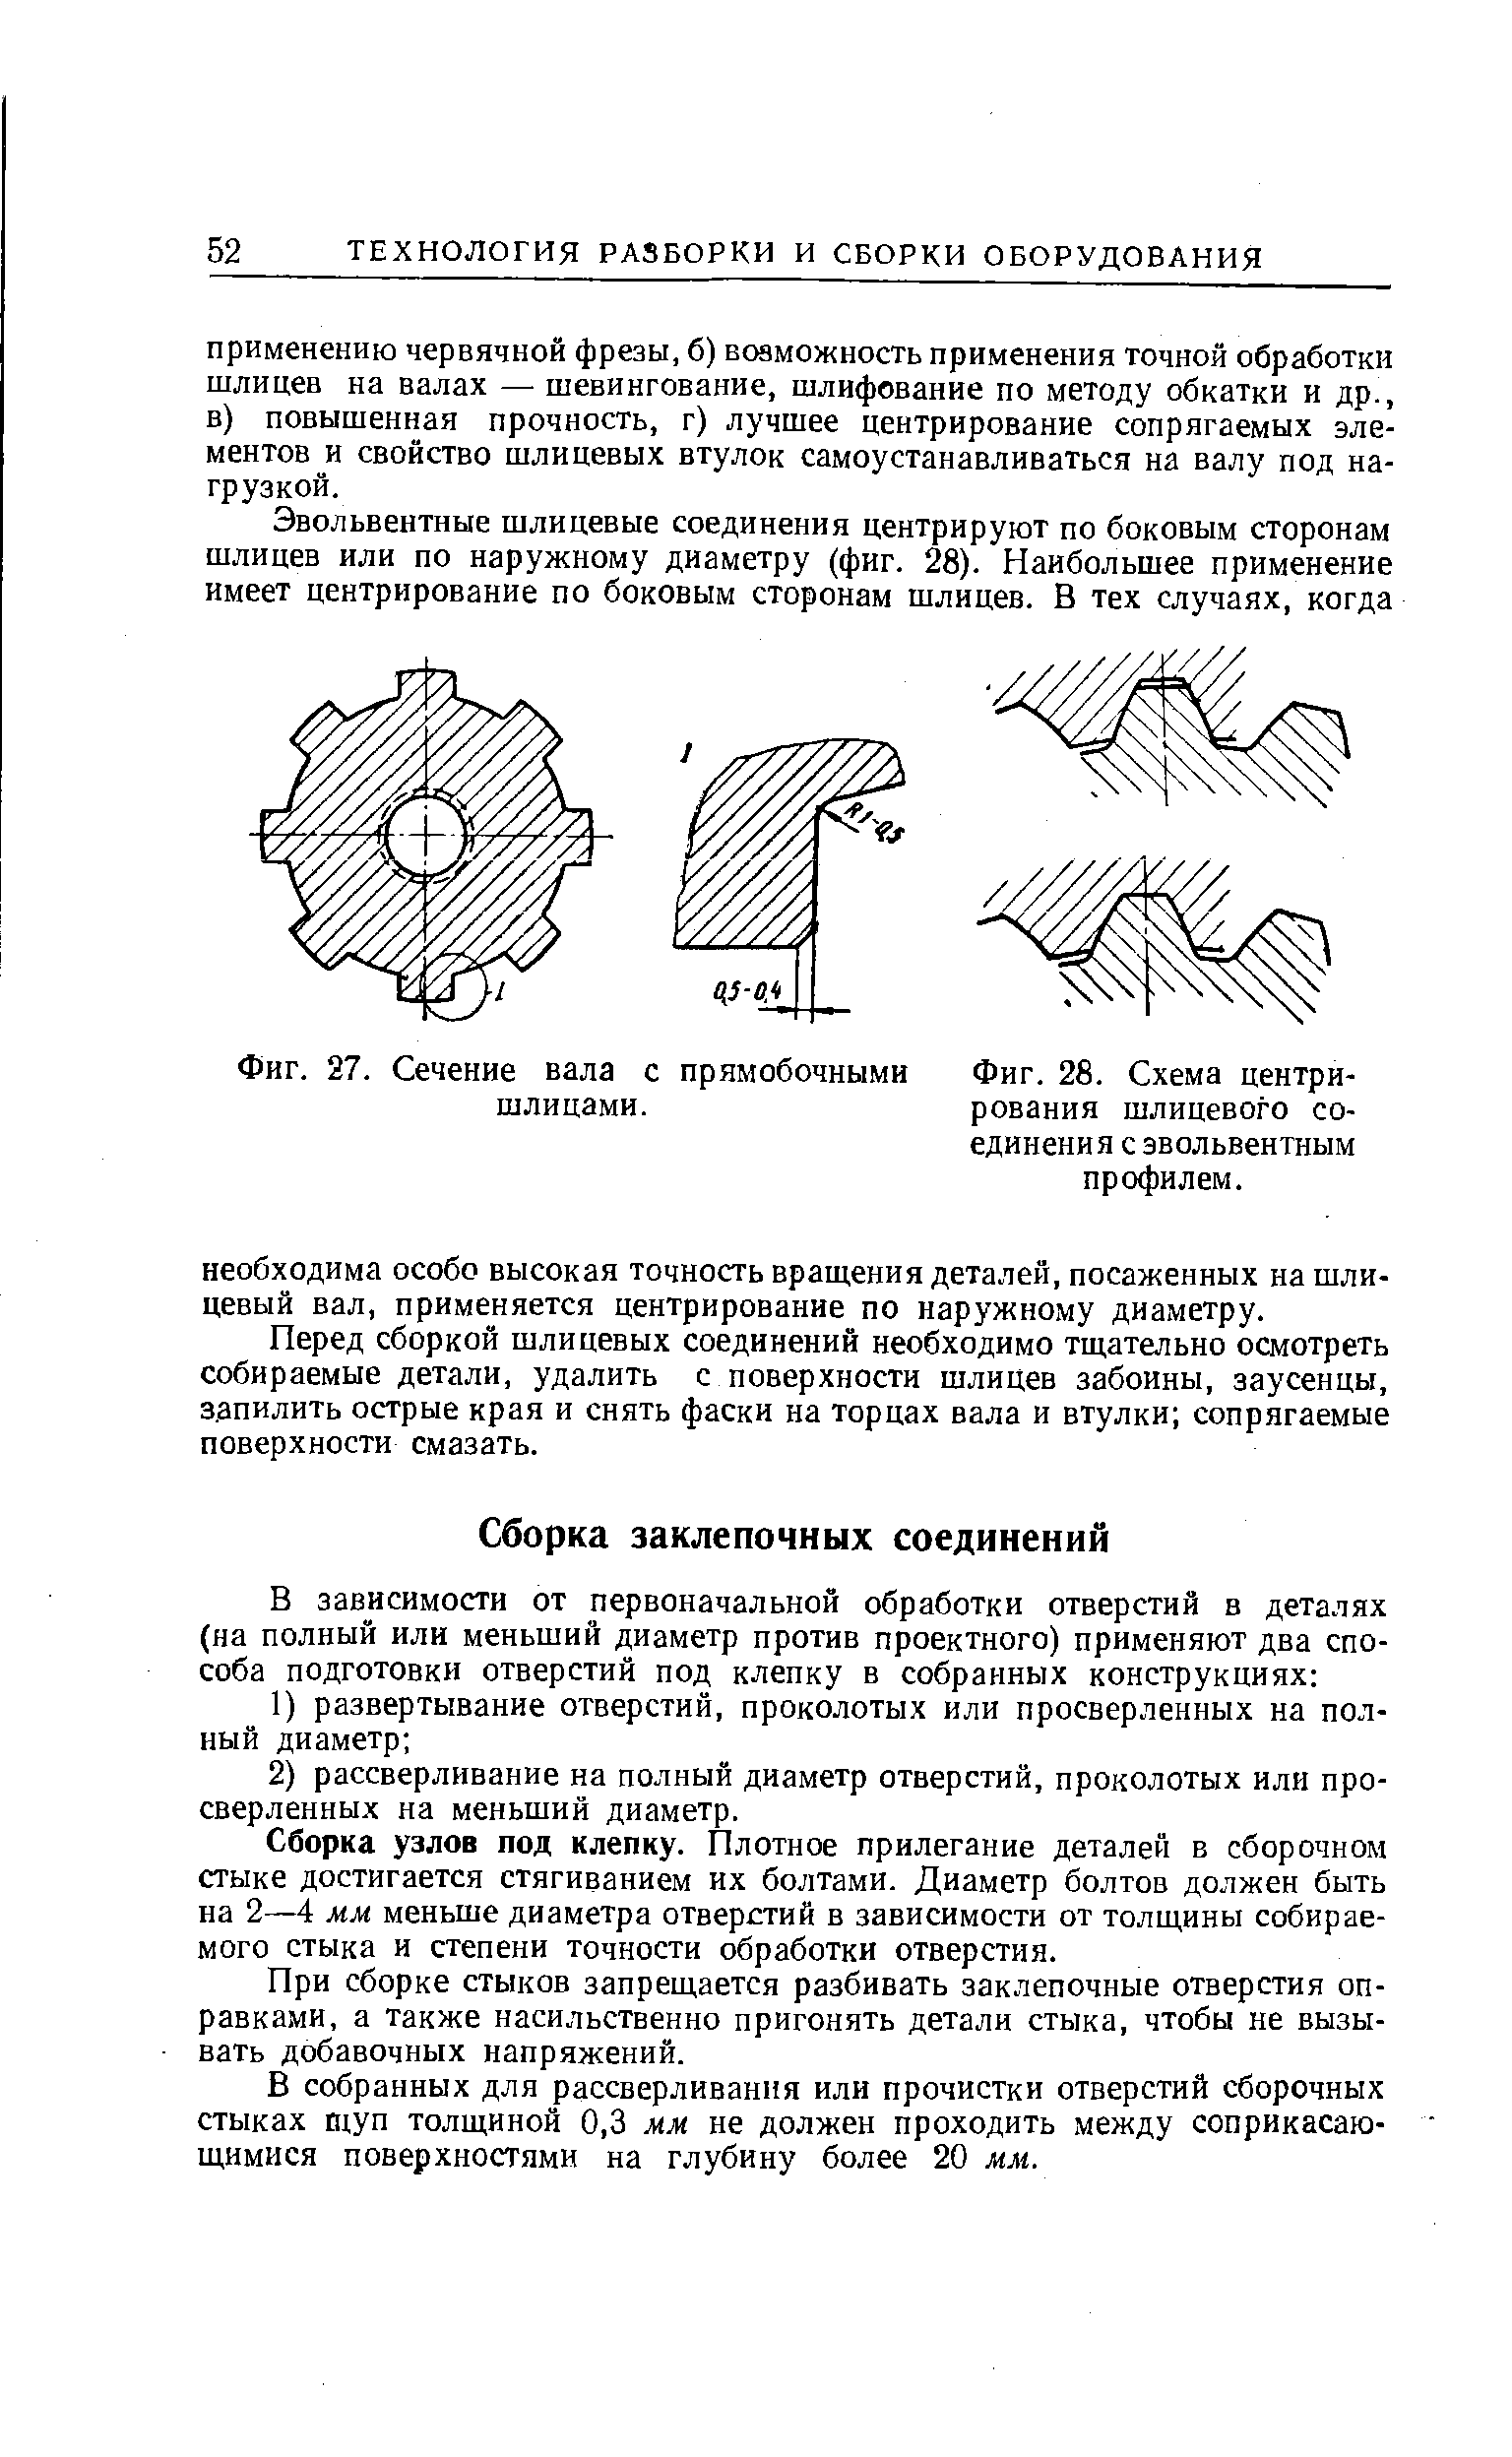 Фиг. 28. Схема центрирования шлицевого соединения с эвольвентным профилем.
